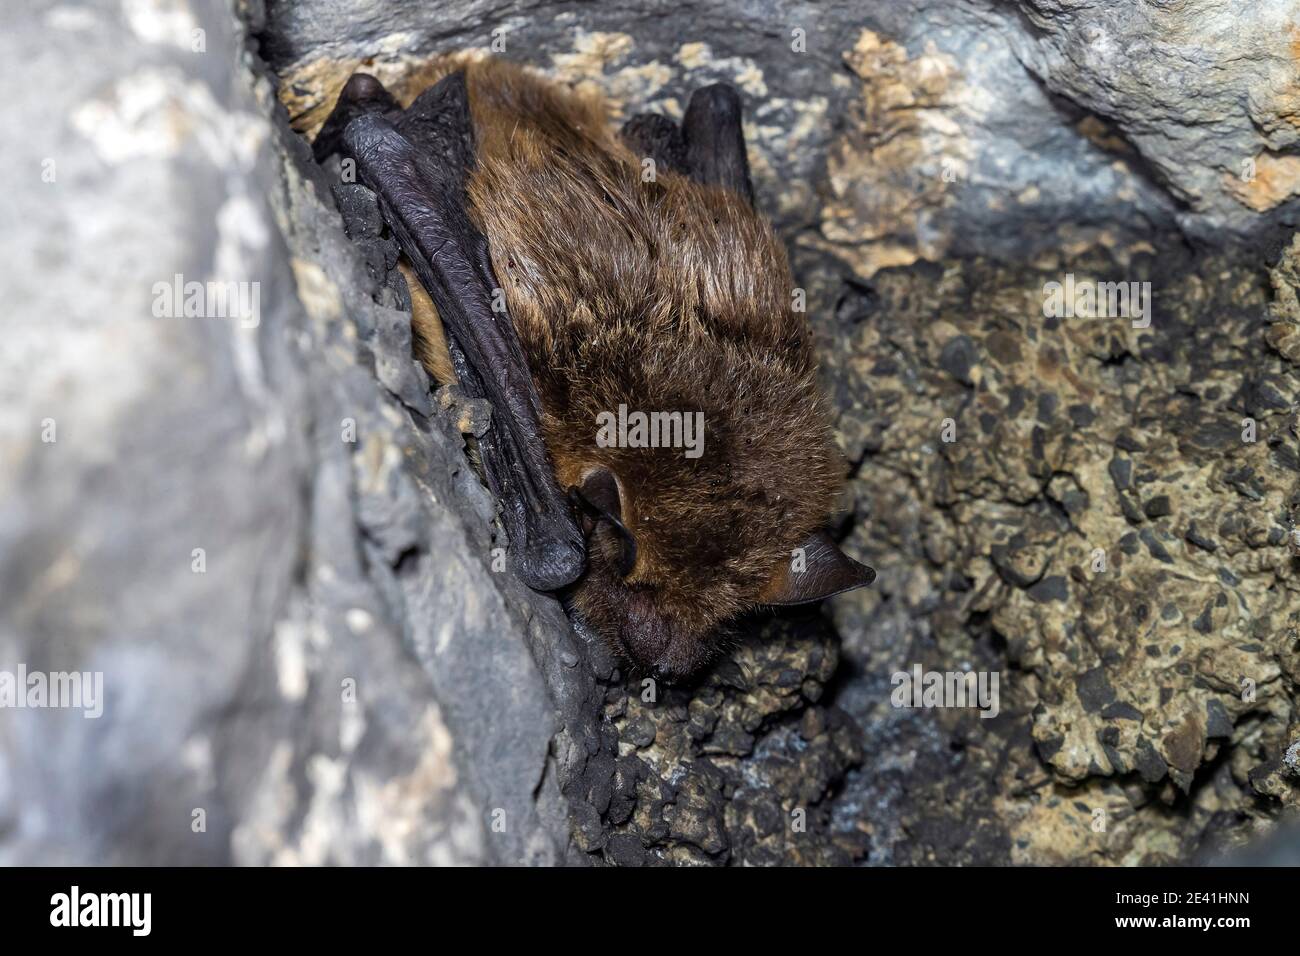 Chauve-souris sérotine, grosse chauve-souris brune, chauve-souris soyeuse (Eptesicus serotinus), hivernant dans une grotte, Belgique Banque D'Images